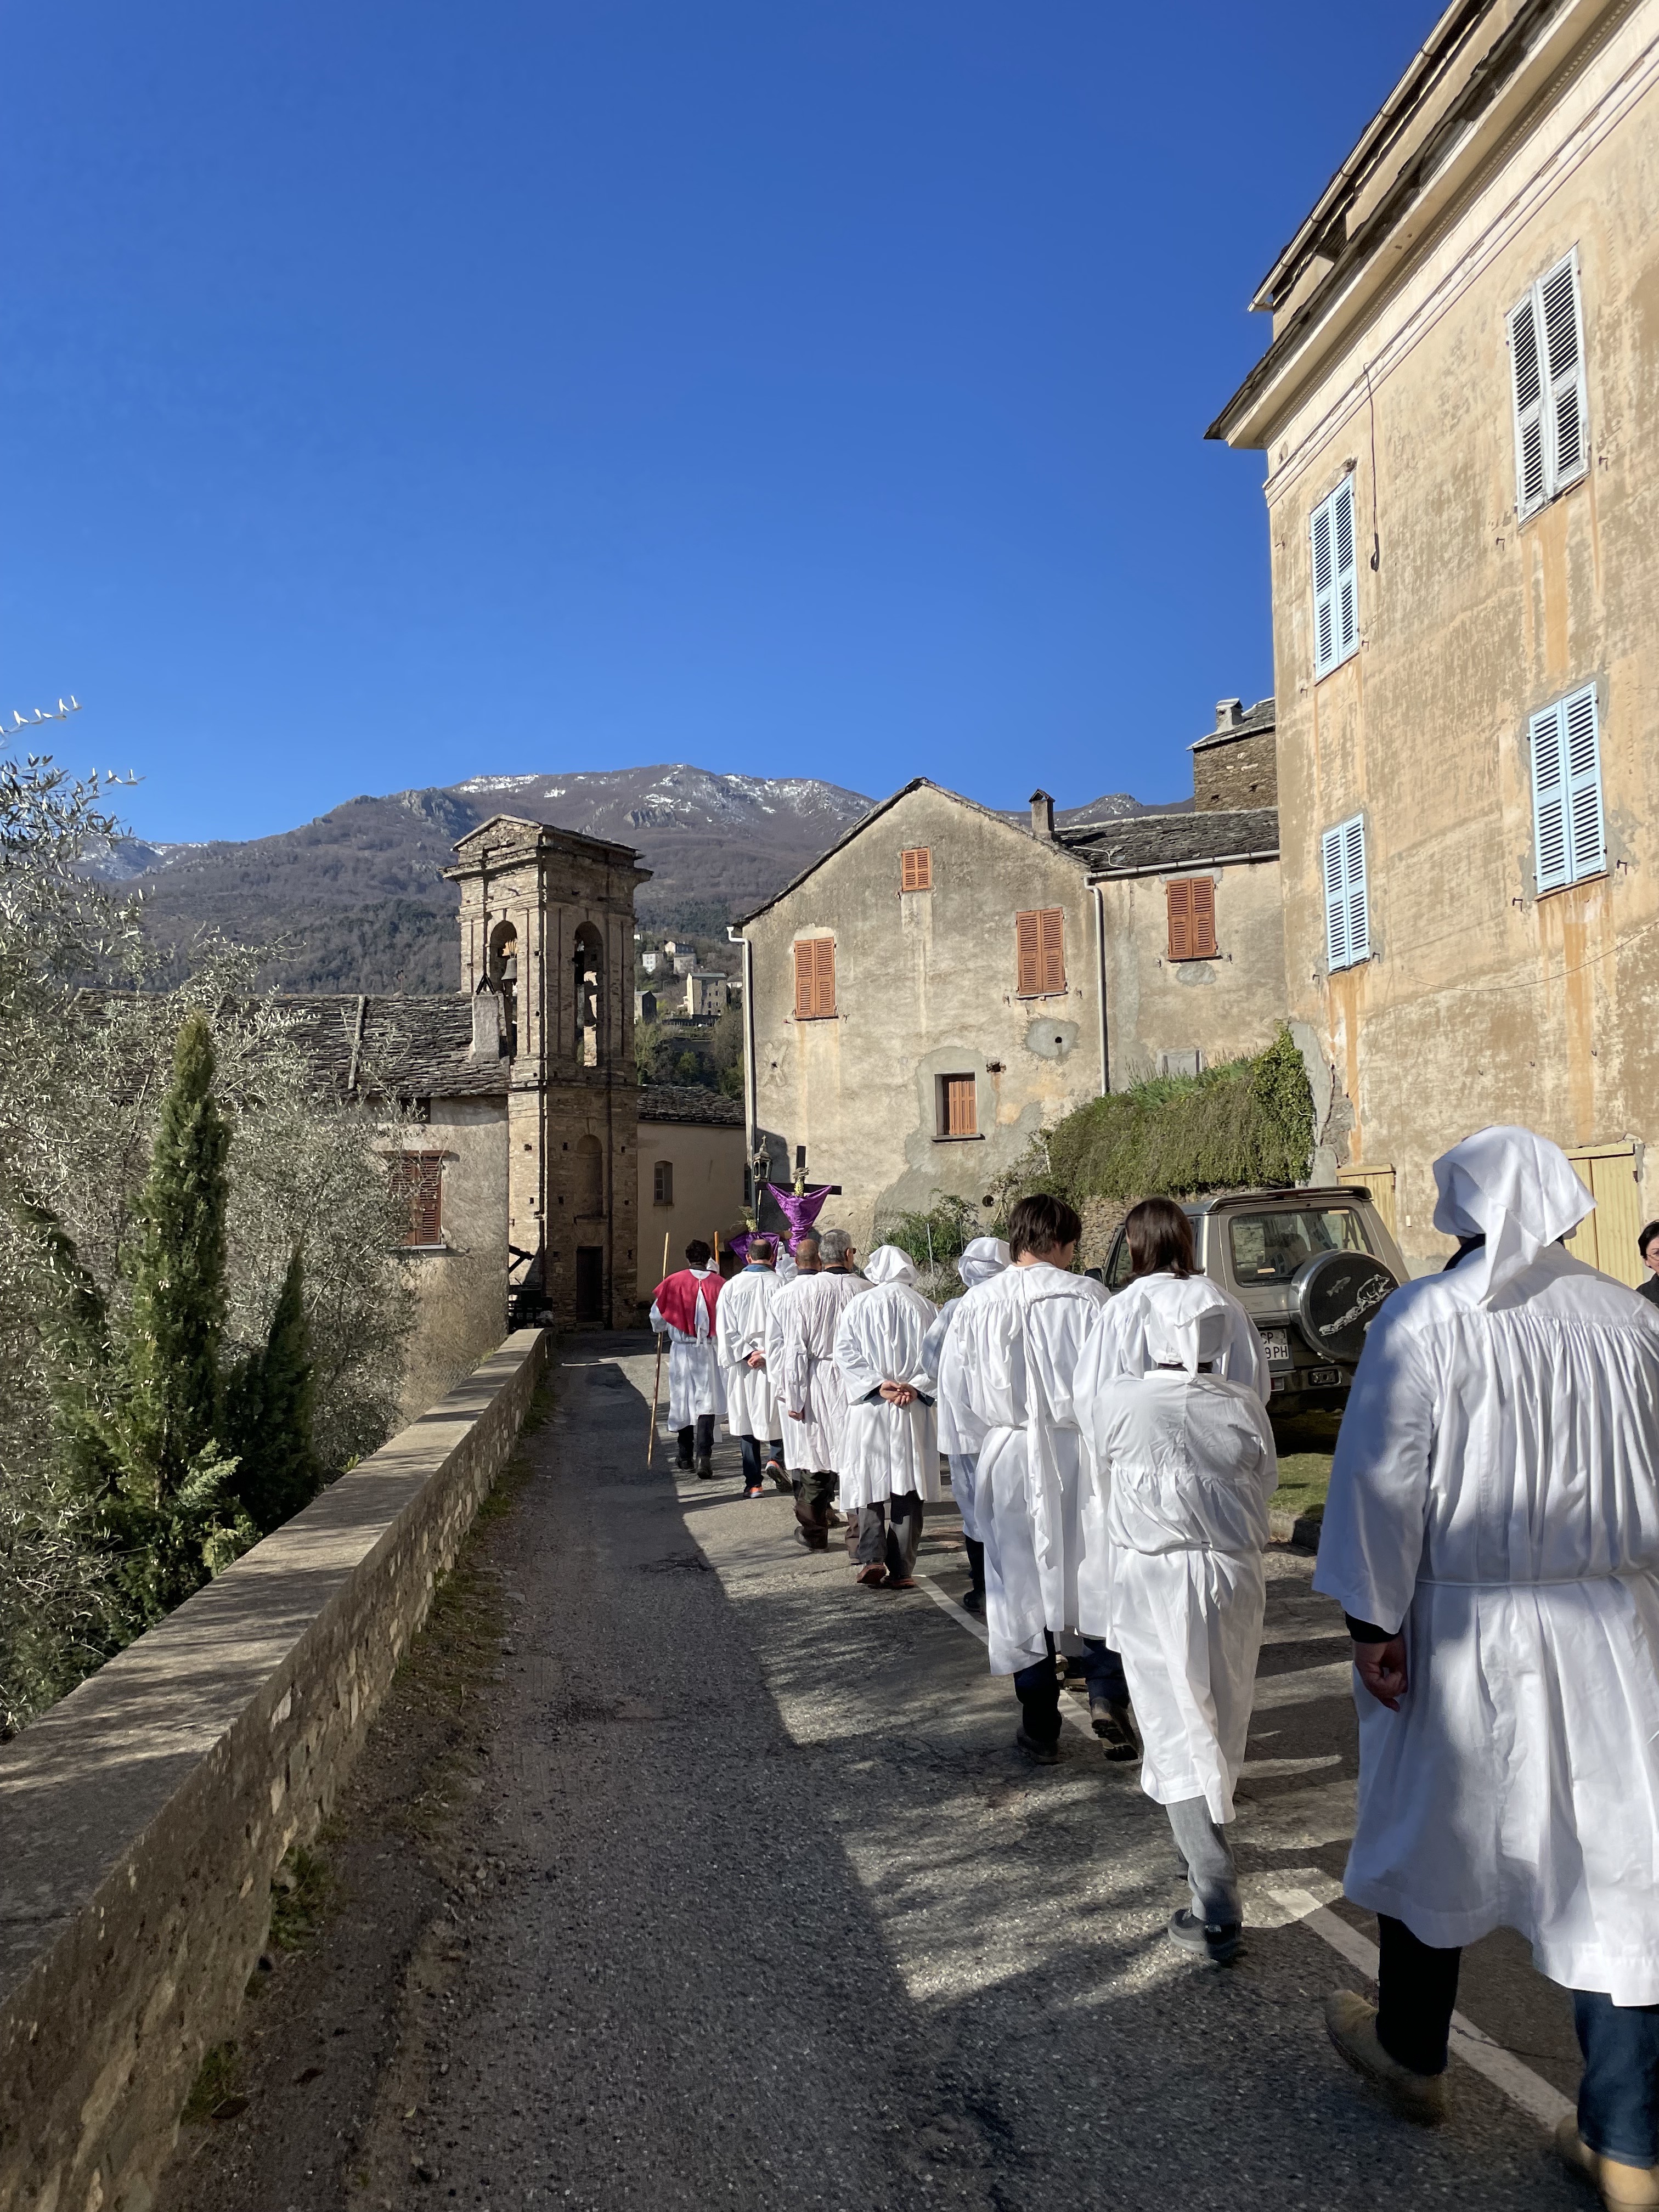 Vendredi Saint : Du Calvaire à la Résurrection, la longue procession des pénitents blancs en Orezza